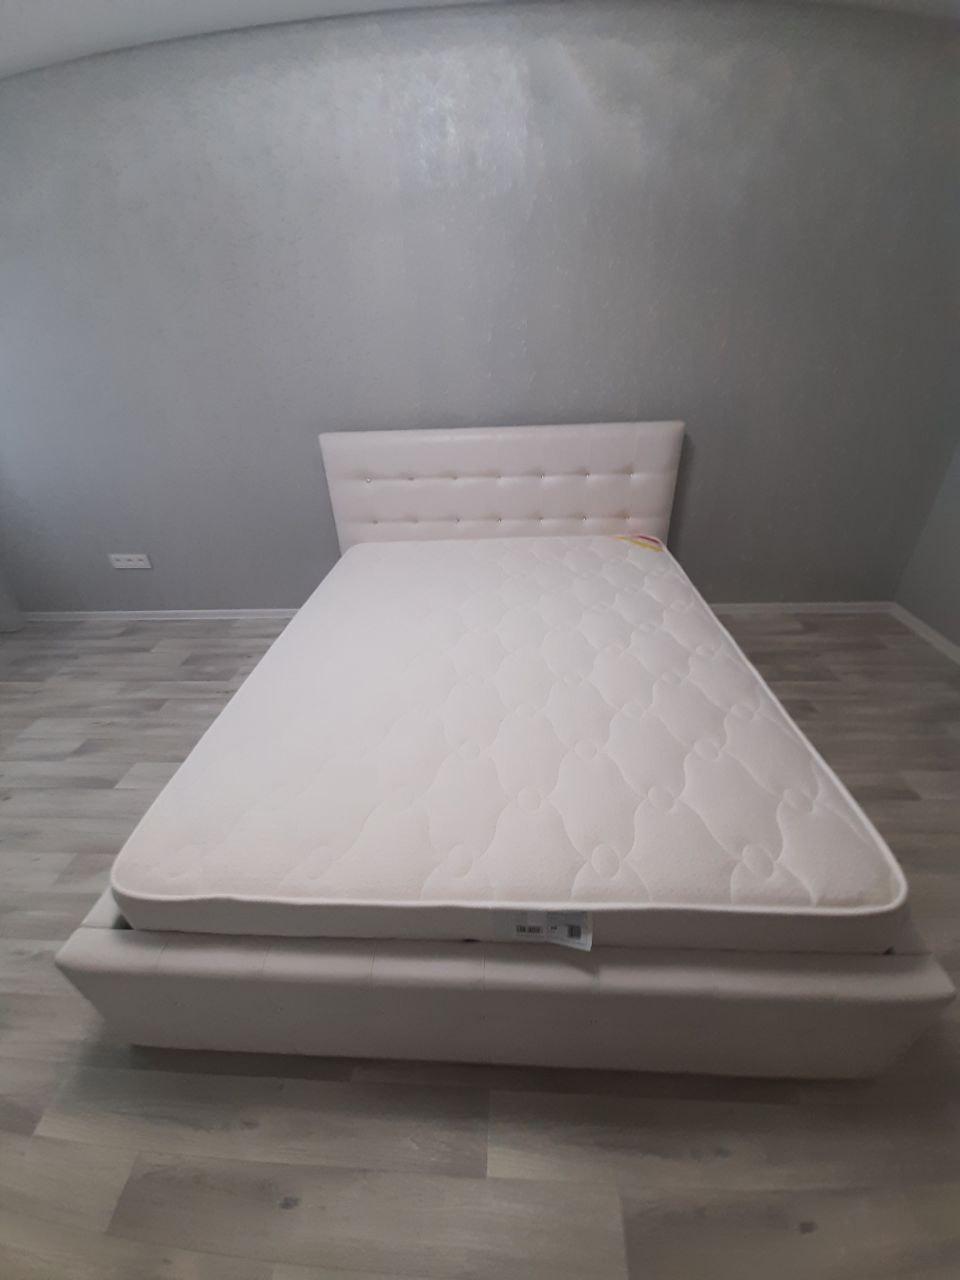 Двуспальная кровать "Bella-Кристалл" 140 х 200 с подъемным механизмом цвет best 03